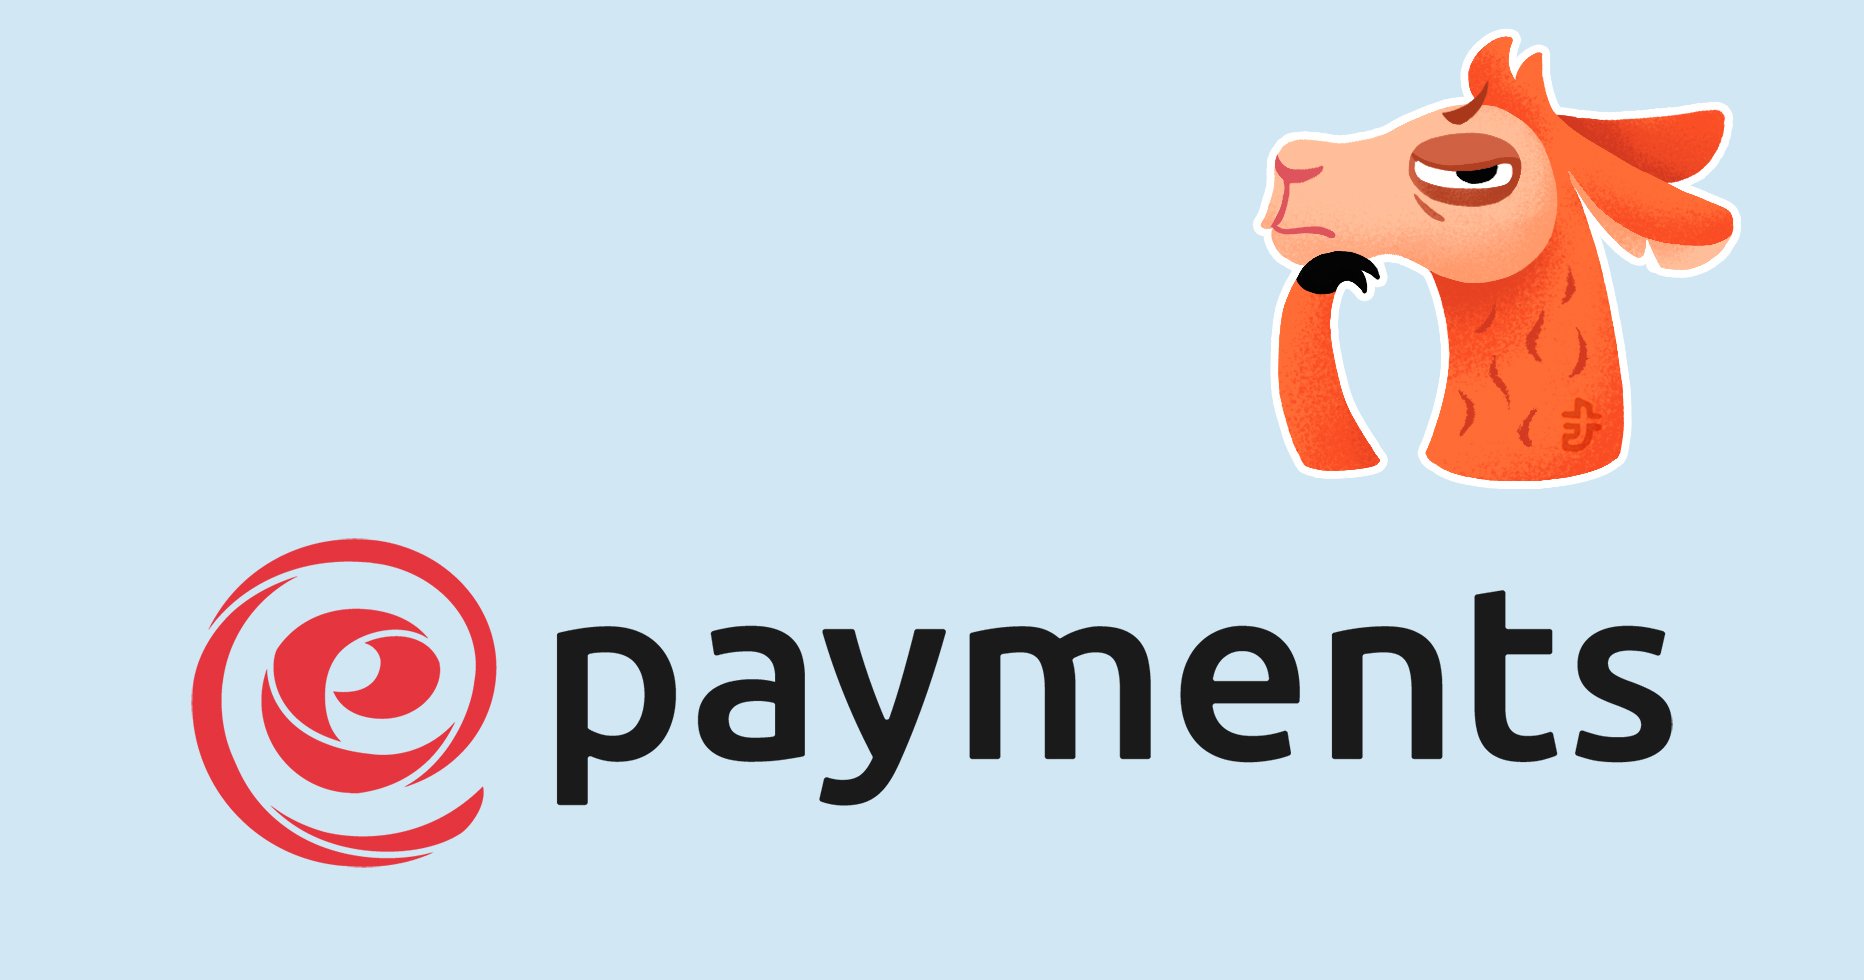 ePayments приостановила платежи. Как получить выплату от TP вовремя